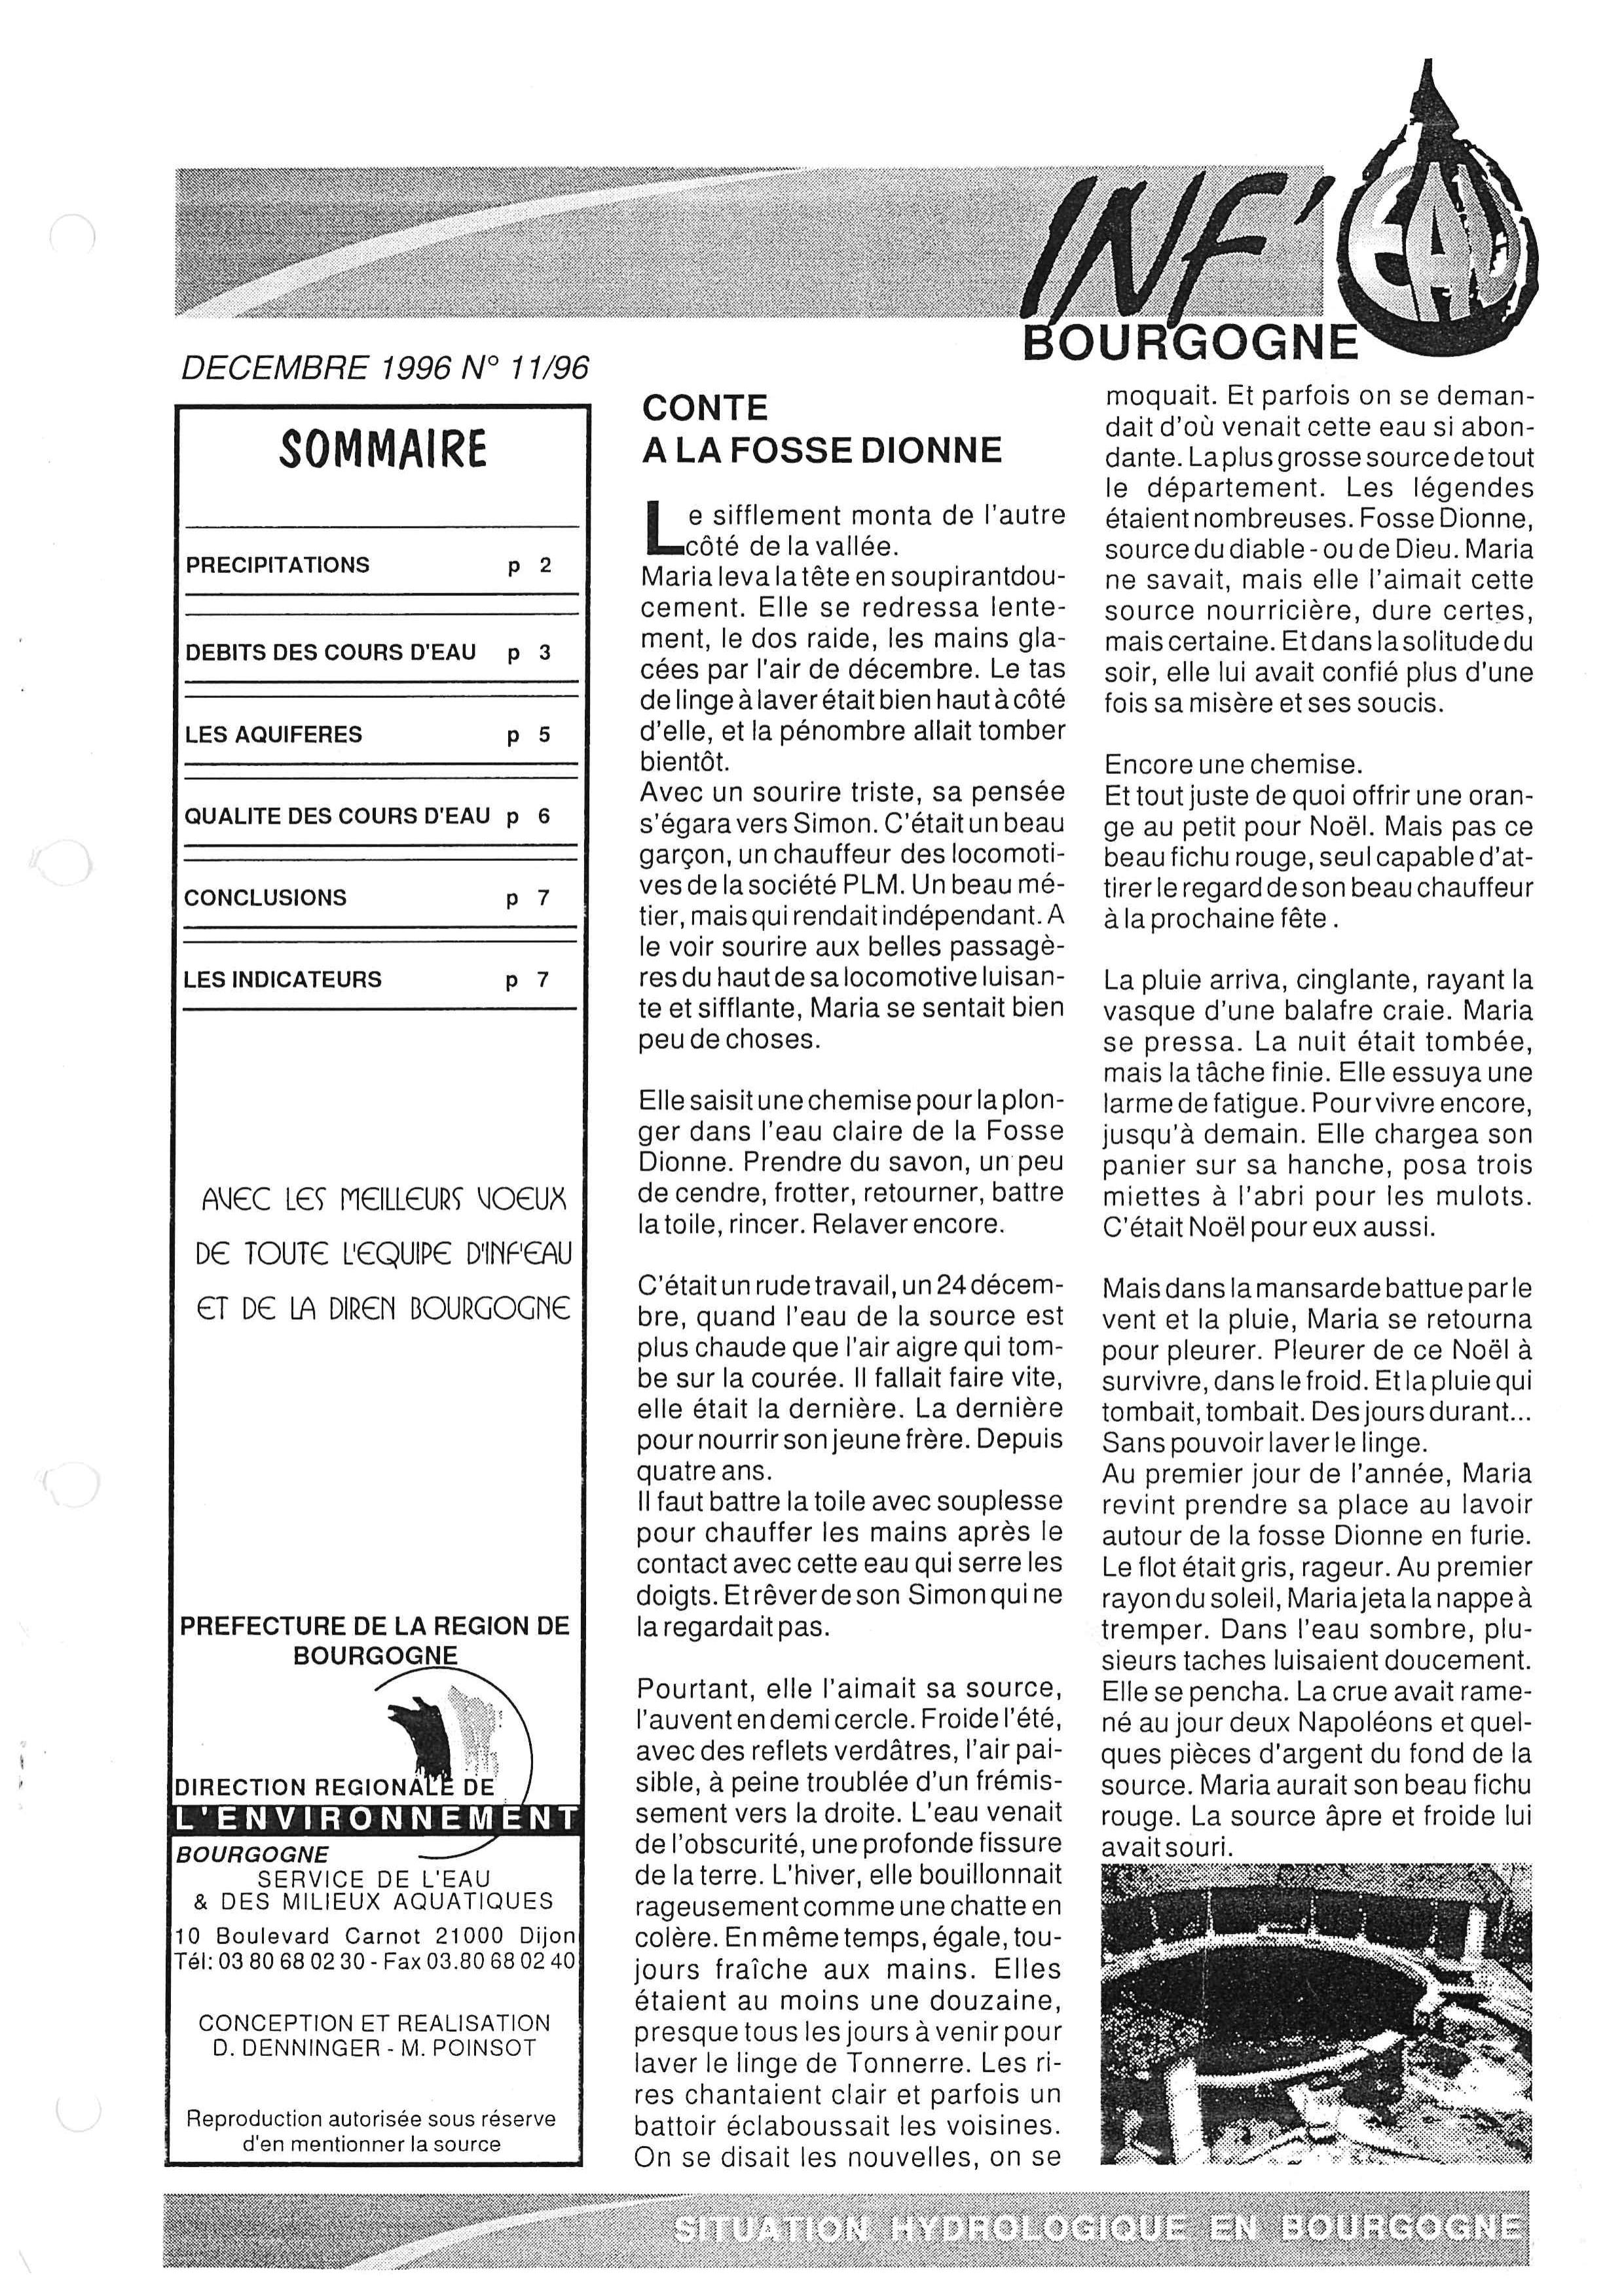 Bulletin hydrologique du mois de décembre 1996